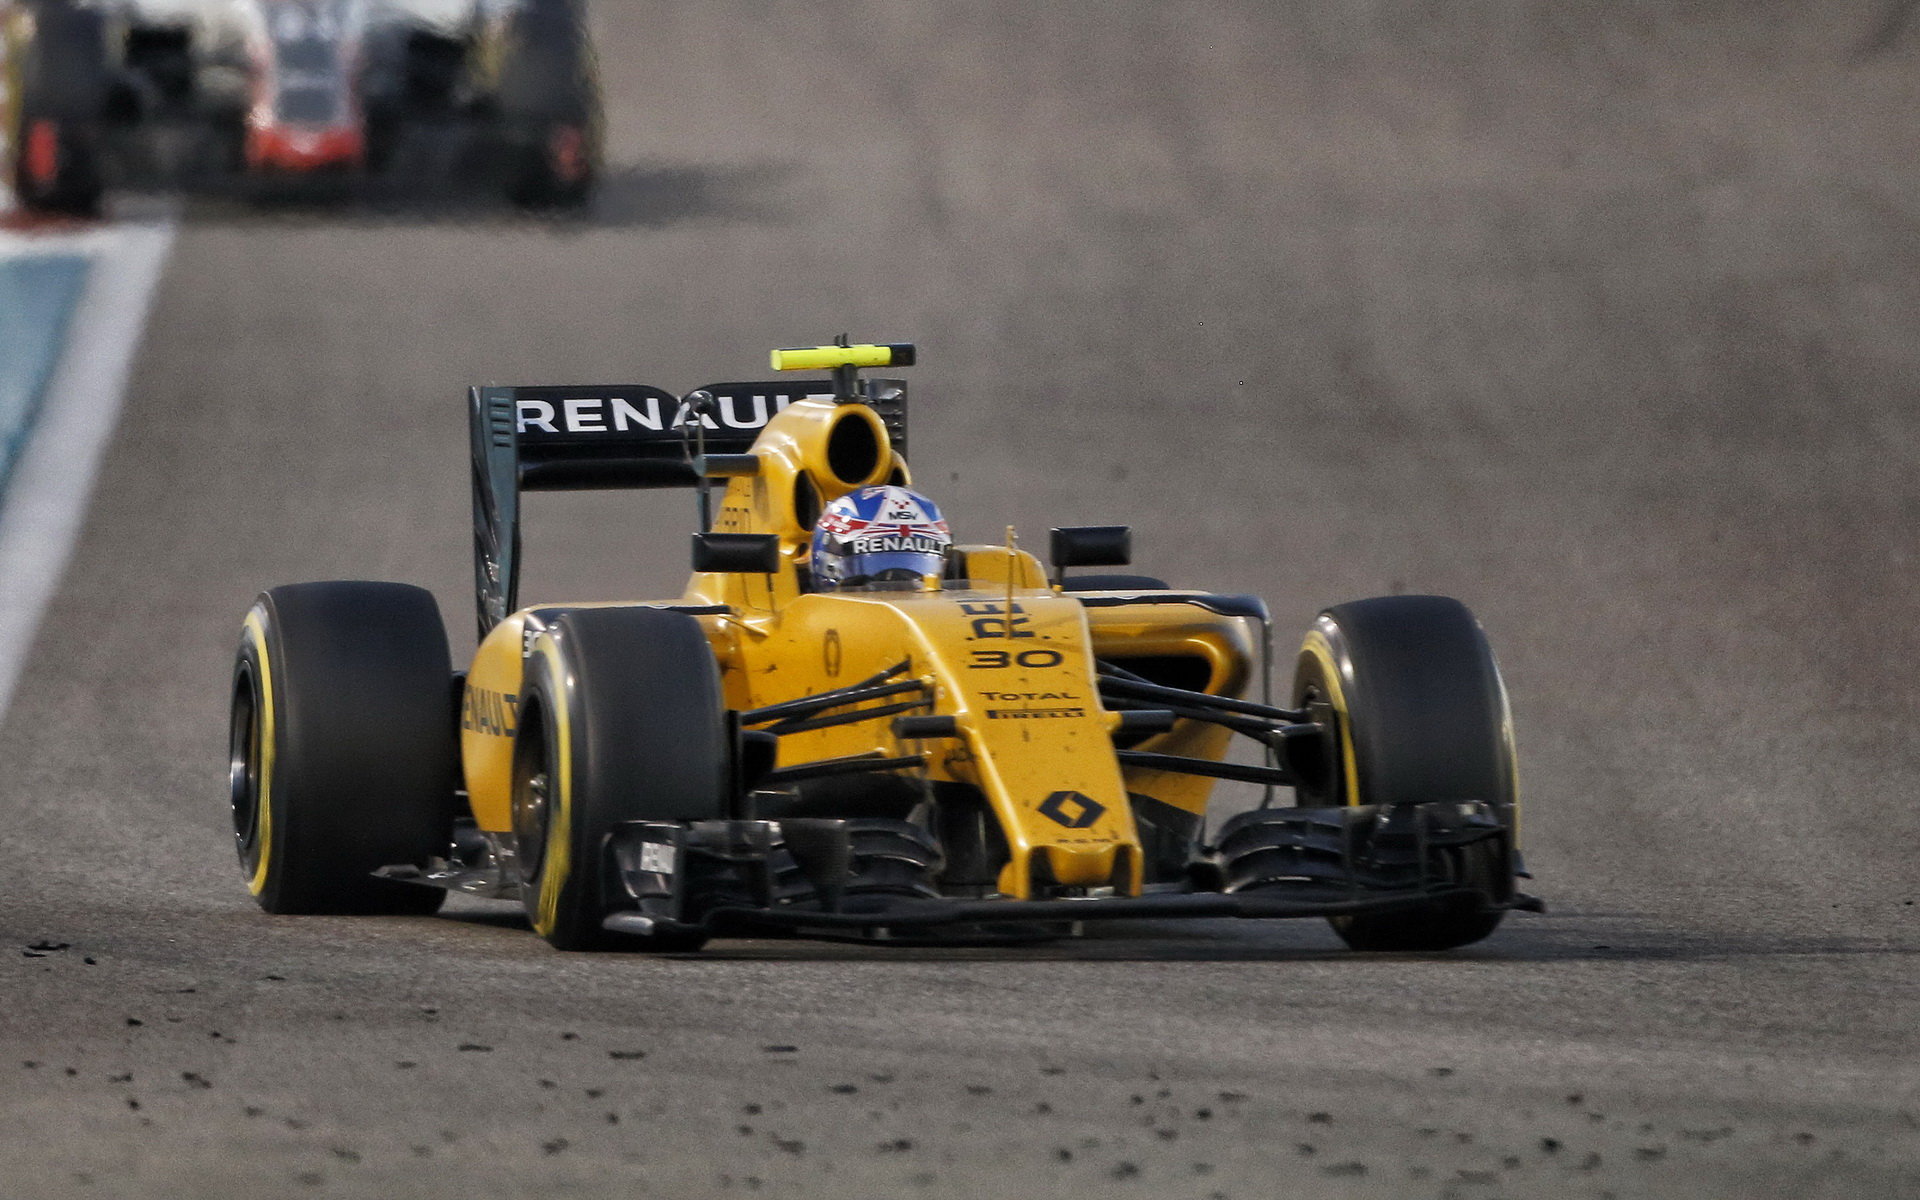 Renault prozradí více podrobností o svých plánech při prezentaci nového vozu 21. února 2017